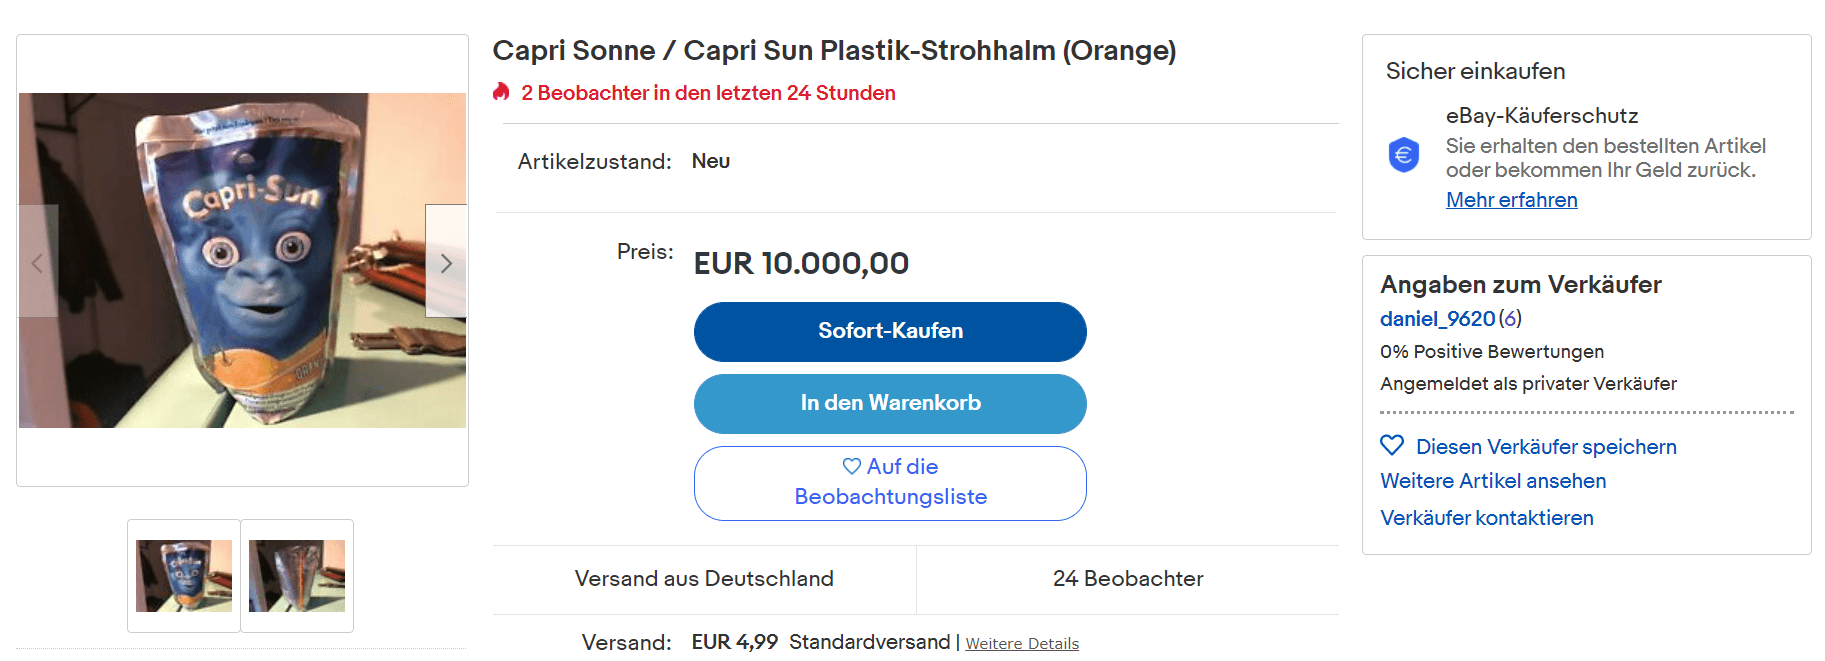 Ein Angebot auf Ebay: Die Preise für Capri-Sonnen mit Plastikstrohhalm variieren auf der Onlineplattform stark.